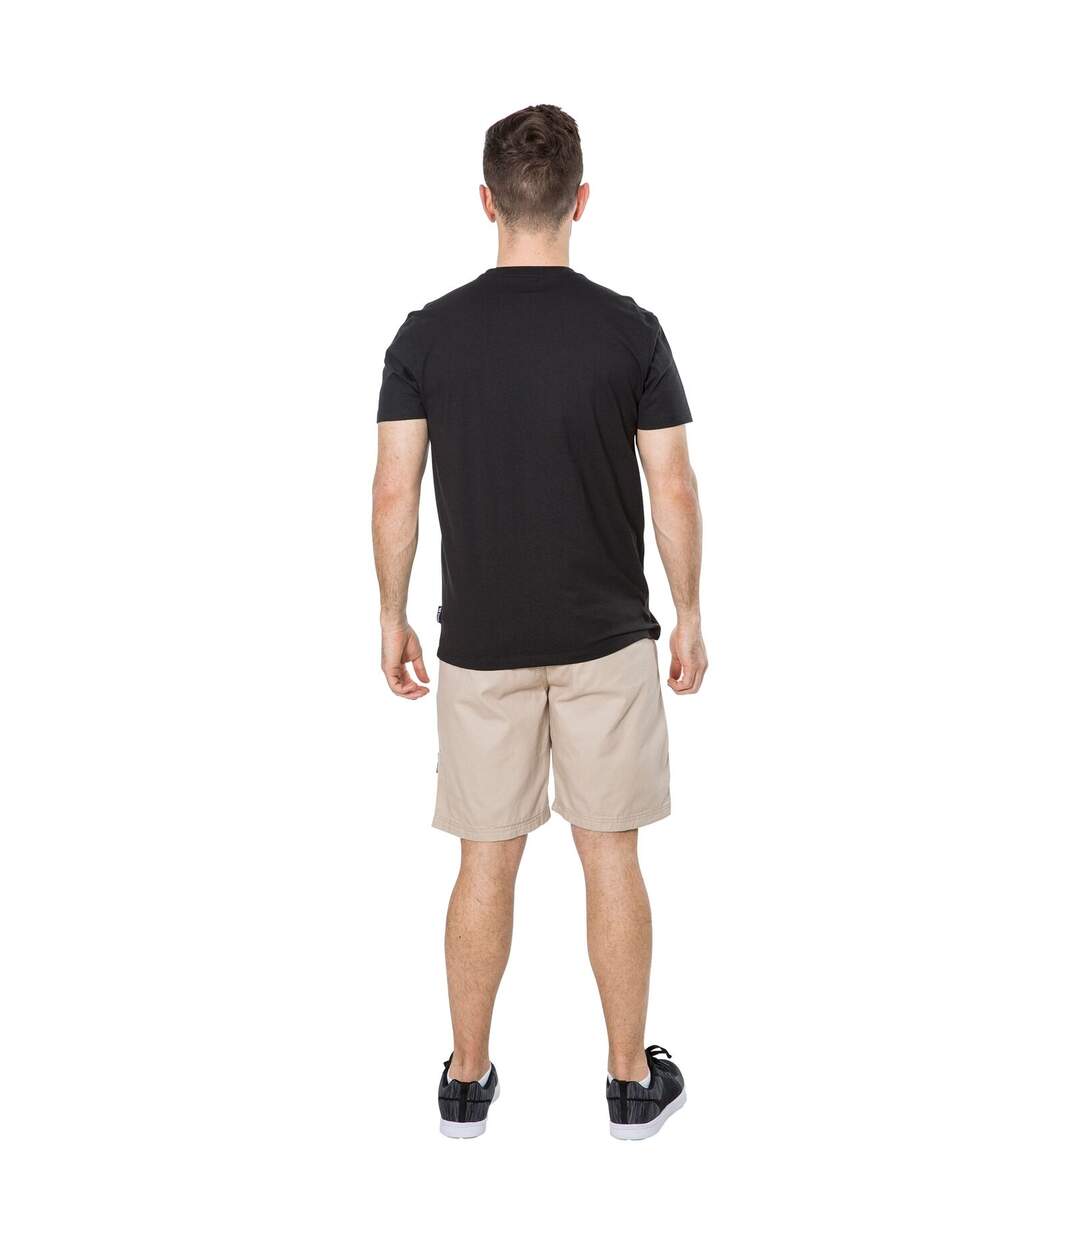 Trespass - T-shirt à manches courtes CASHING - Homme (Noir) - UTTP4122